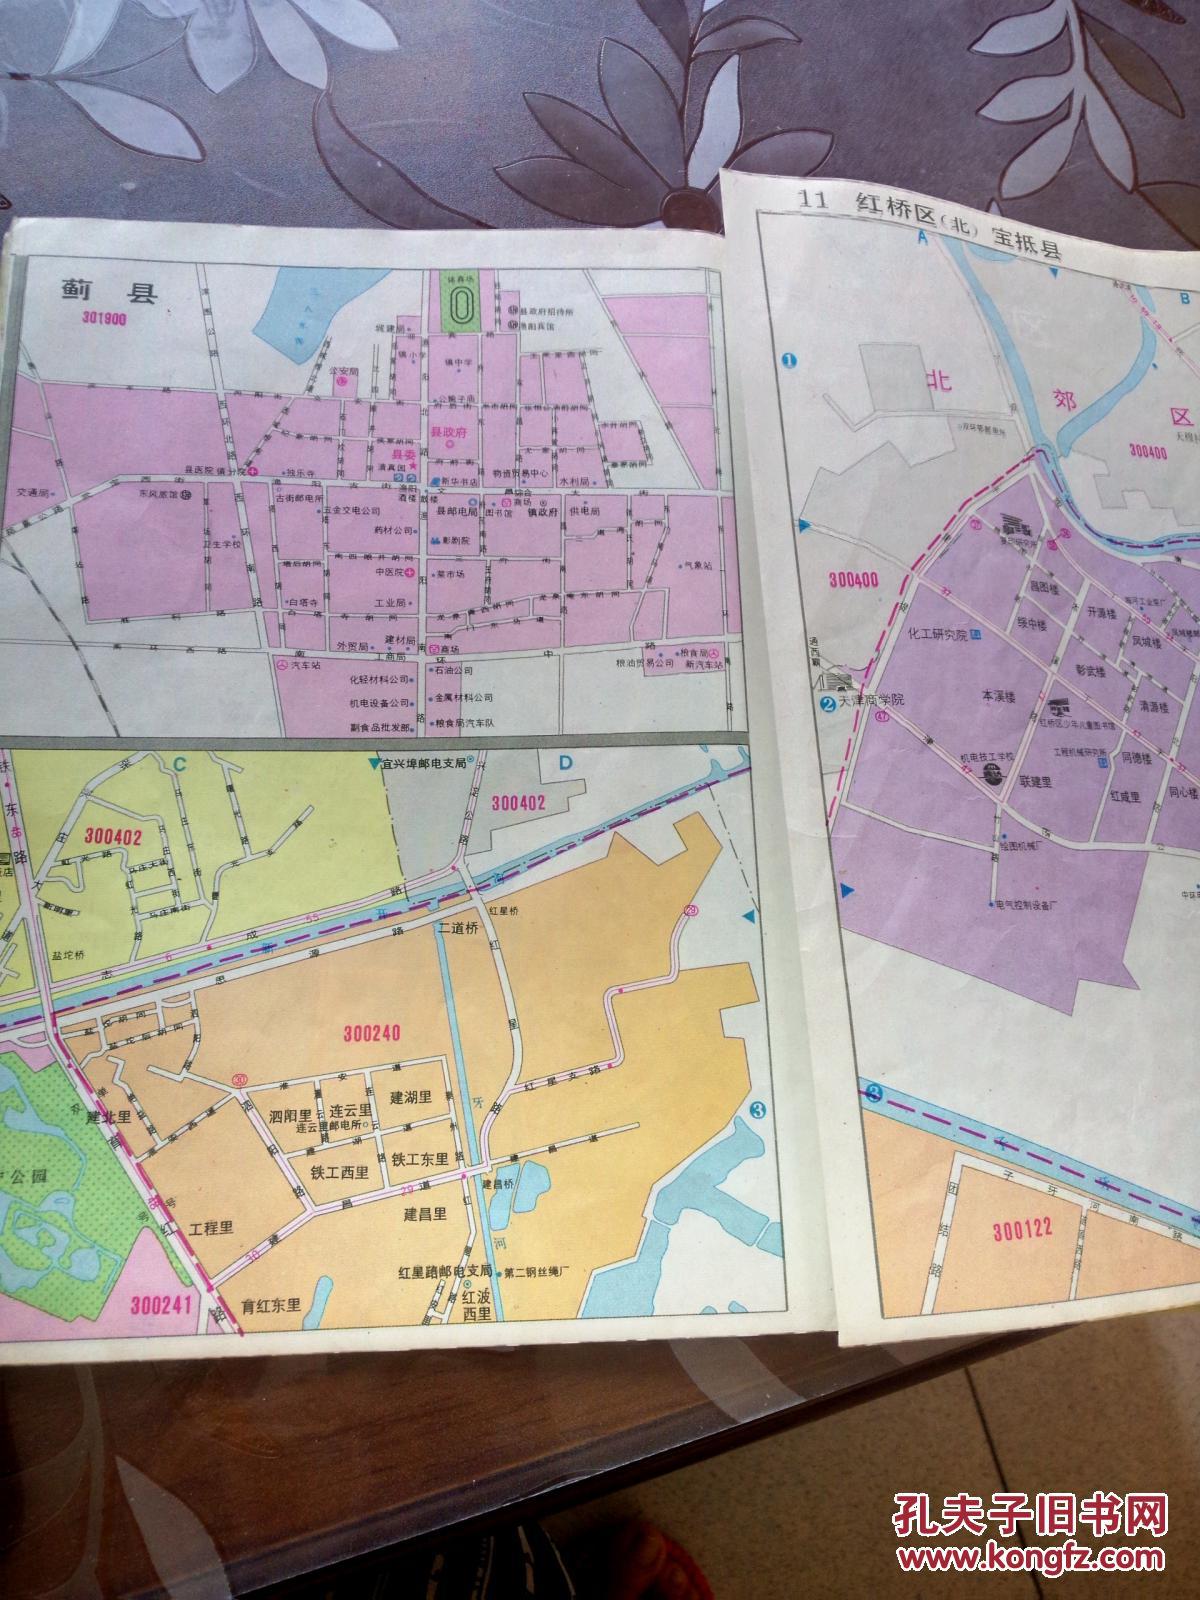 【图】天津邮政编码图册_哈尔滨地图出版社